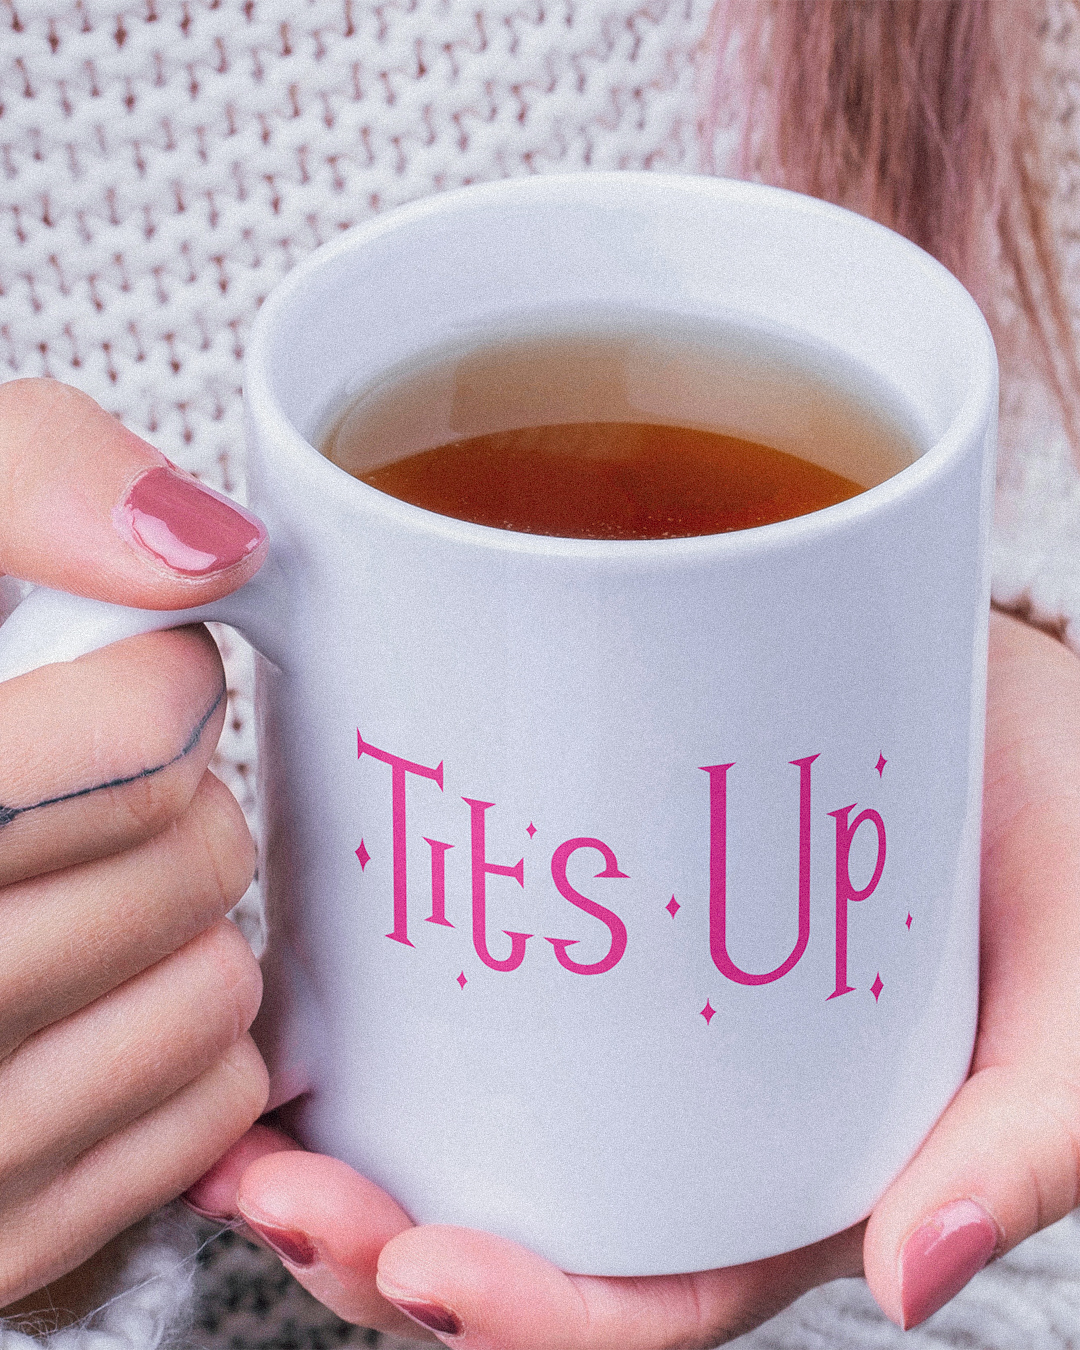 Tits Up Mug - The Marvelous Mrs Maisel Inspired Mug - Mrs Maisel Tits Up Mug - Tits Up Mrs Maisel Inspired Mug